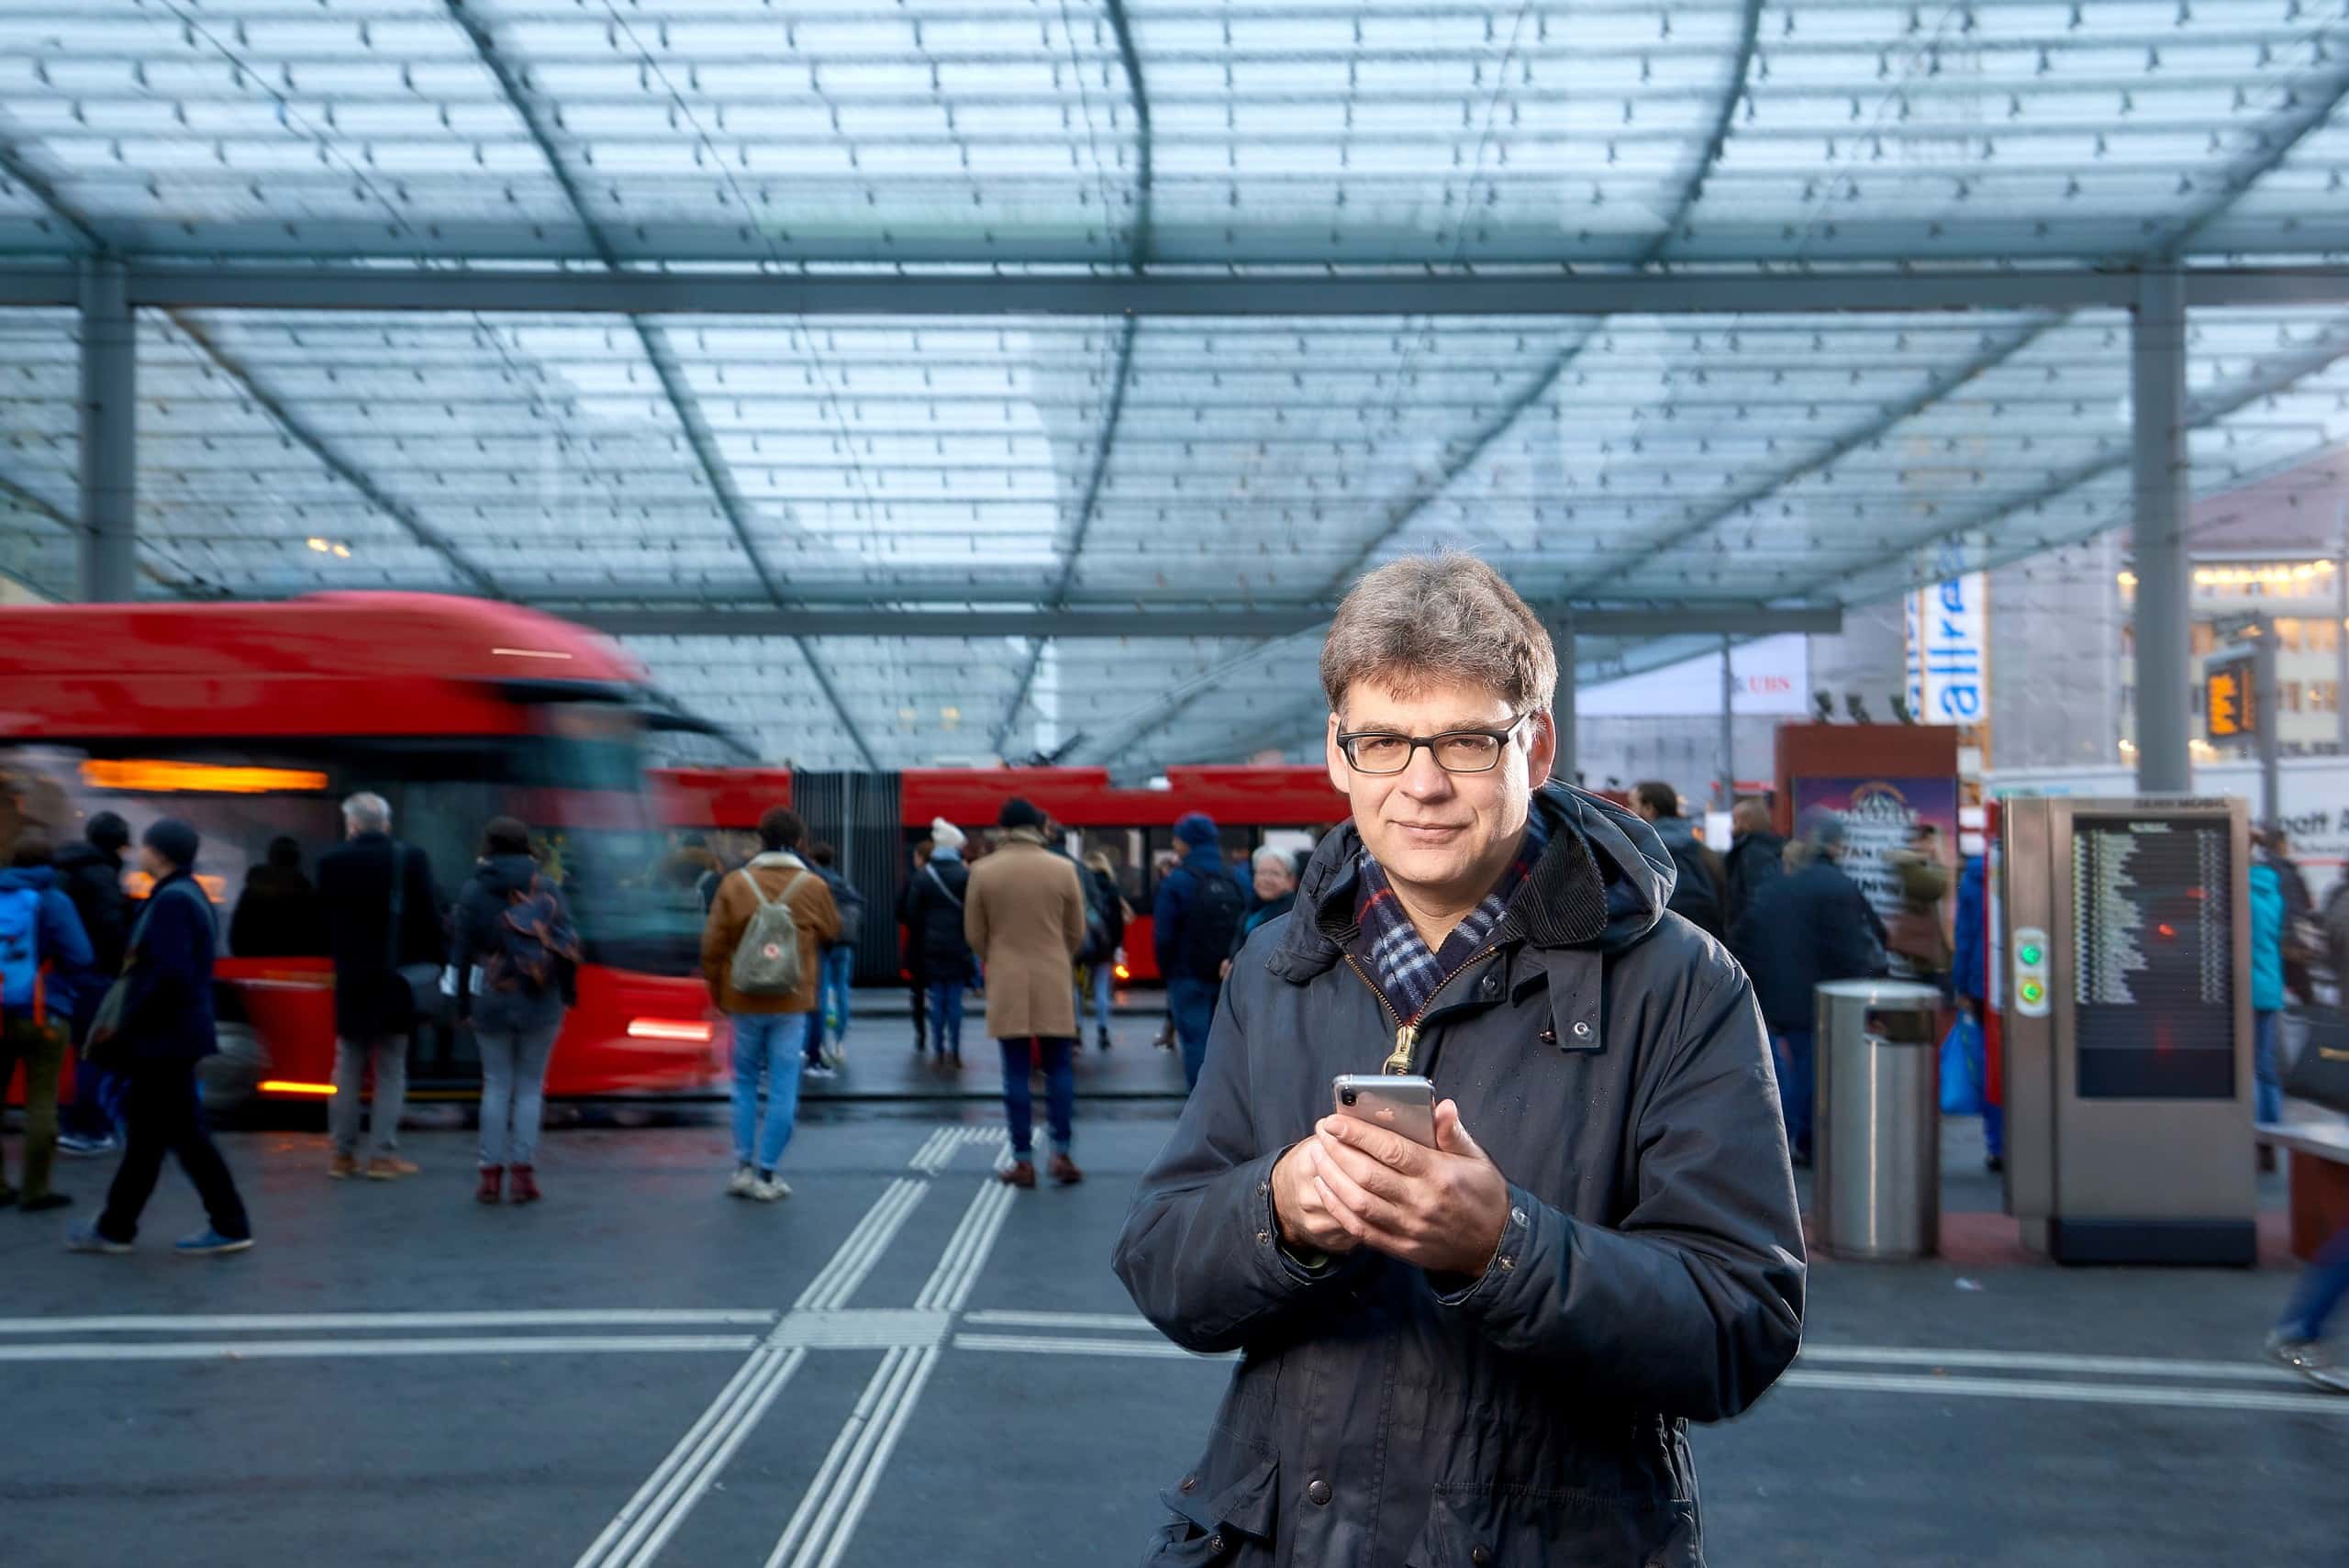 Gian Mattia Schucan, Gründer und Co-Vorstand von Fairtiq, träumte von ticketlosen Bahnfahrten. Bildquelle: Fairtiq